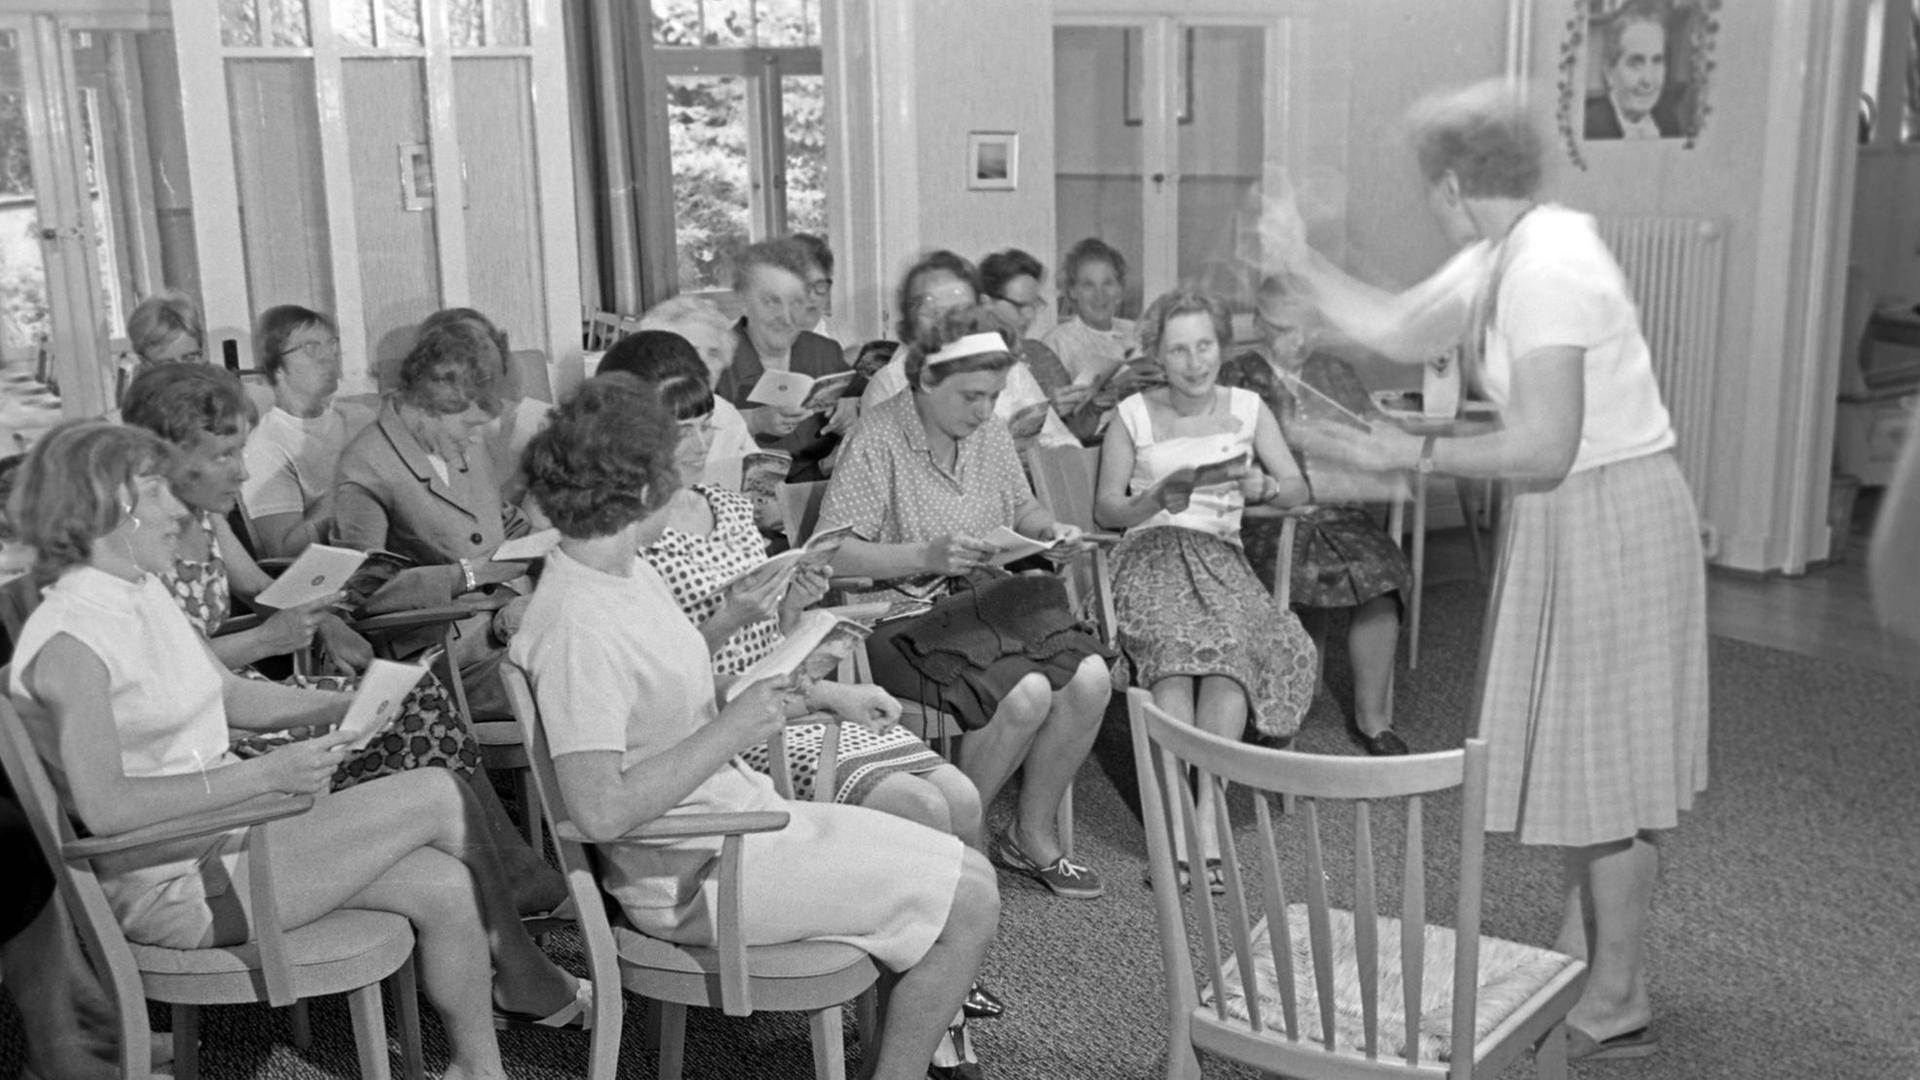 Das Foto ist schwarz-weiß. Frauen sitzen in einem Raum auf Stühlen im Halbkreis und singen, rechts steht eine weitere Frau und dirigiert. Im Hintergrund an der Wand rechts hängt ein Porträt von Elly Heuss-Knapp.